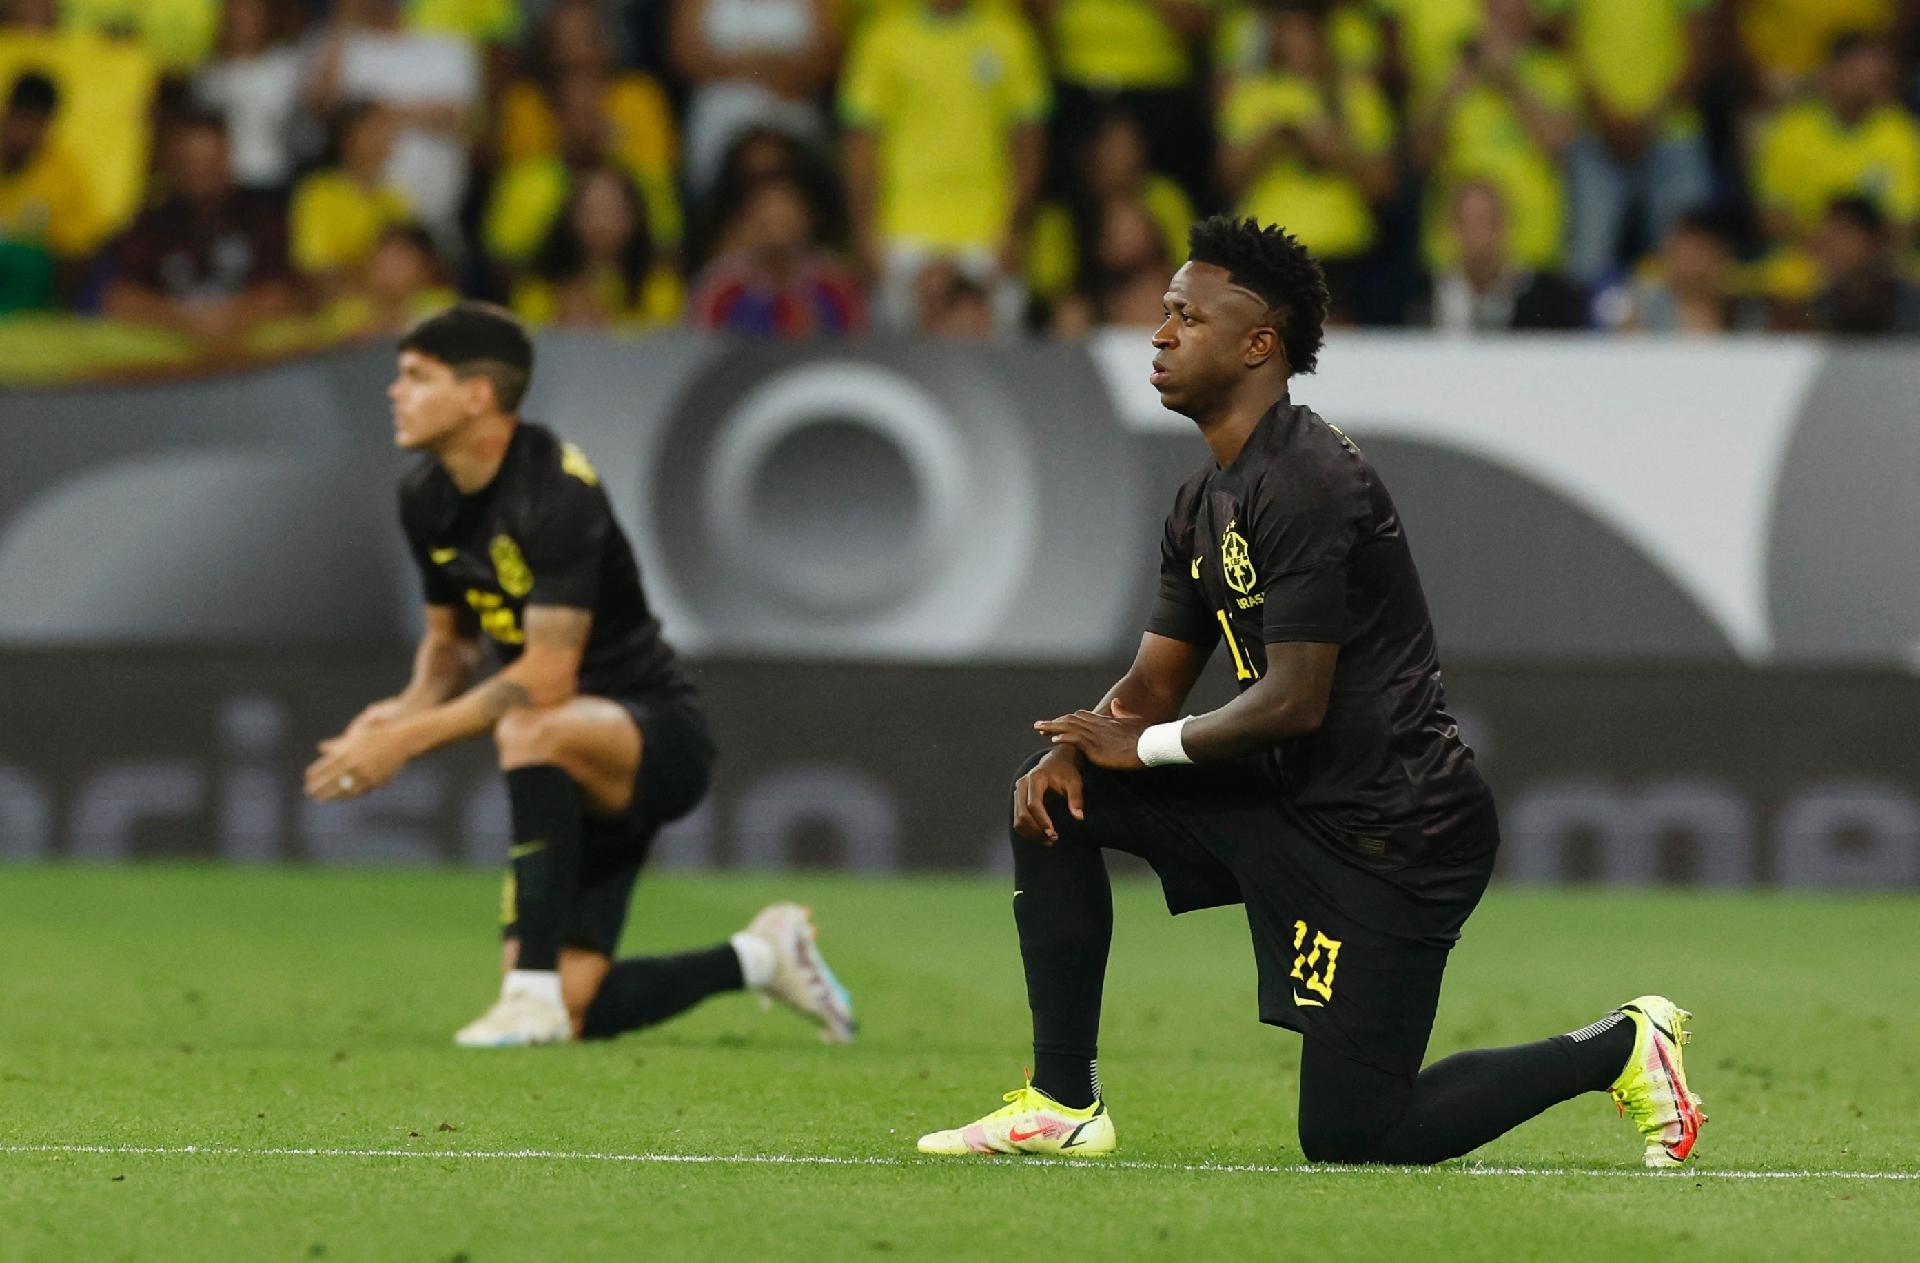 Contra o racismo, seleção brasileira jogará com uniforme preto pela  primeira vez na história - Máquina do Esporte